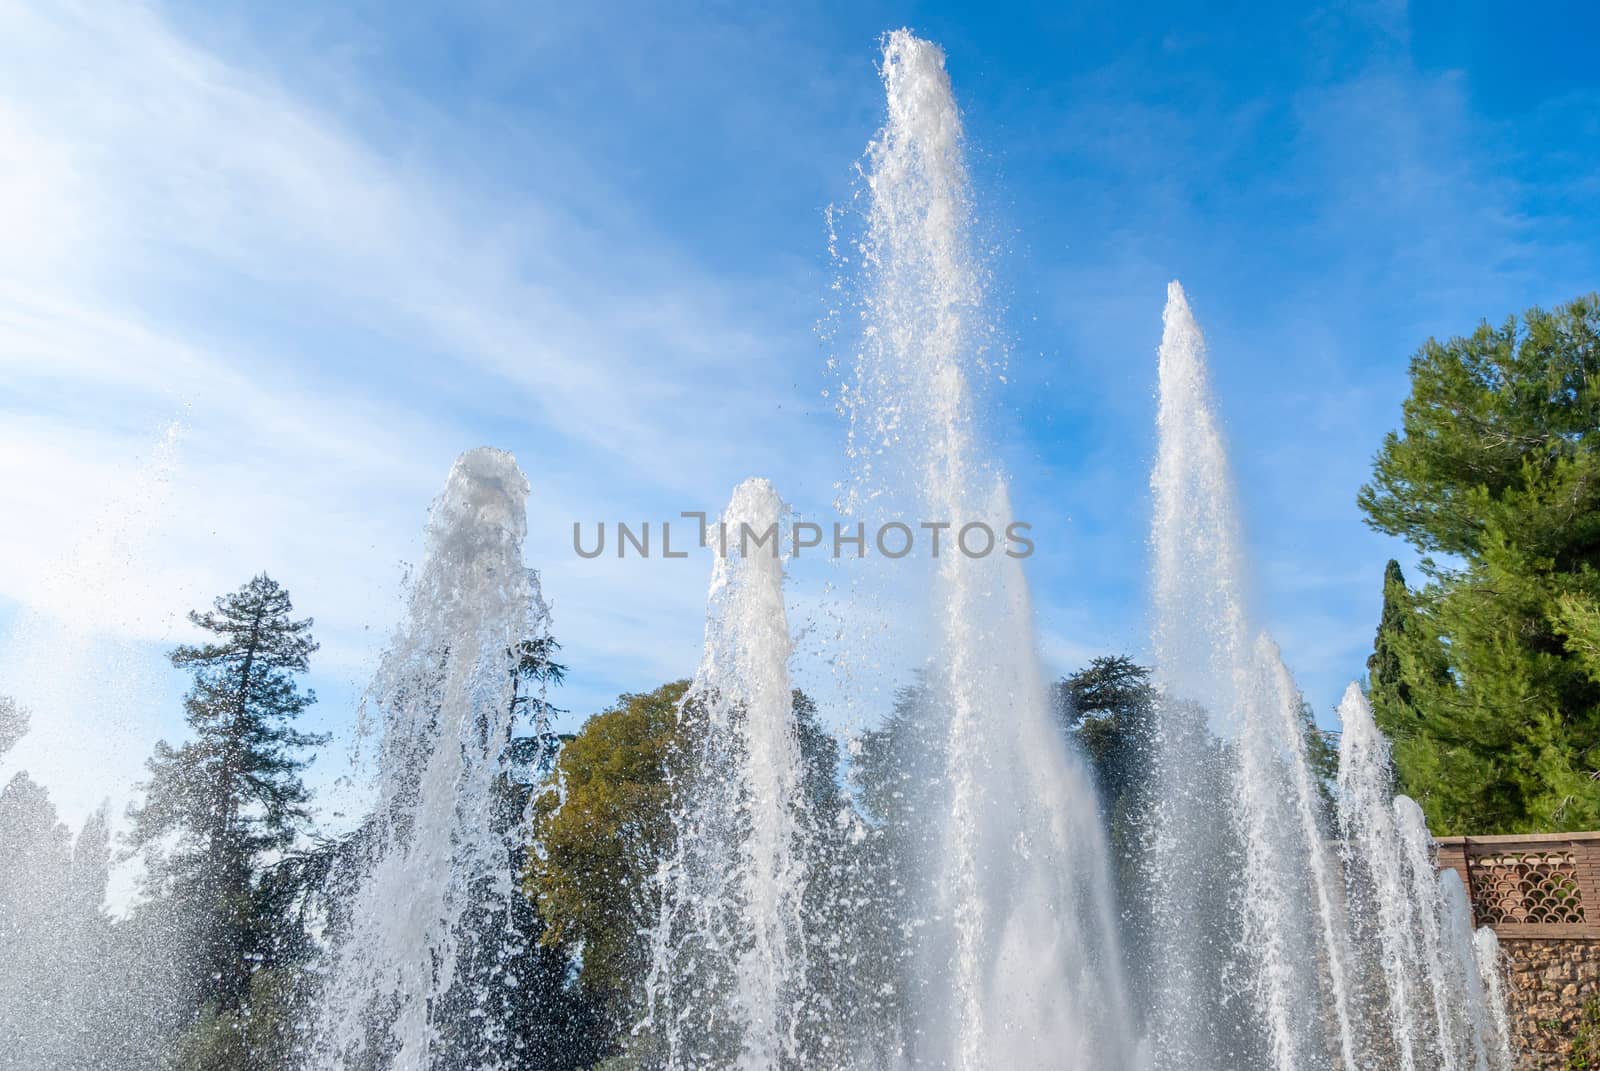 Water jets and fountains of the Villa d'Este in Tivoli. Lazio region, Italy .